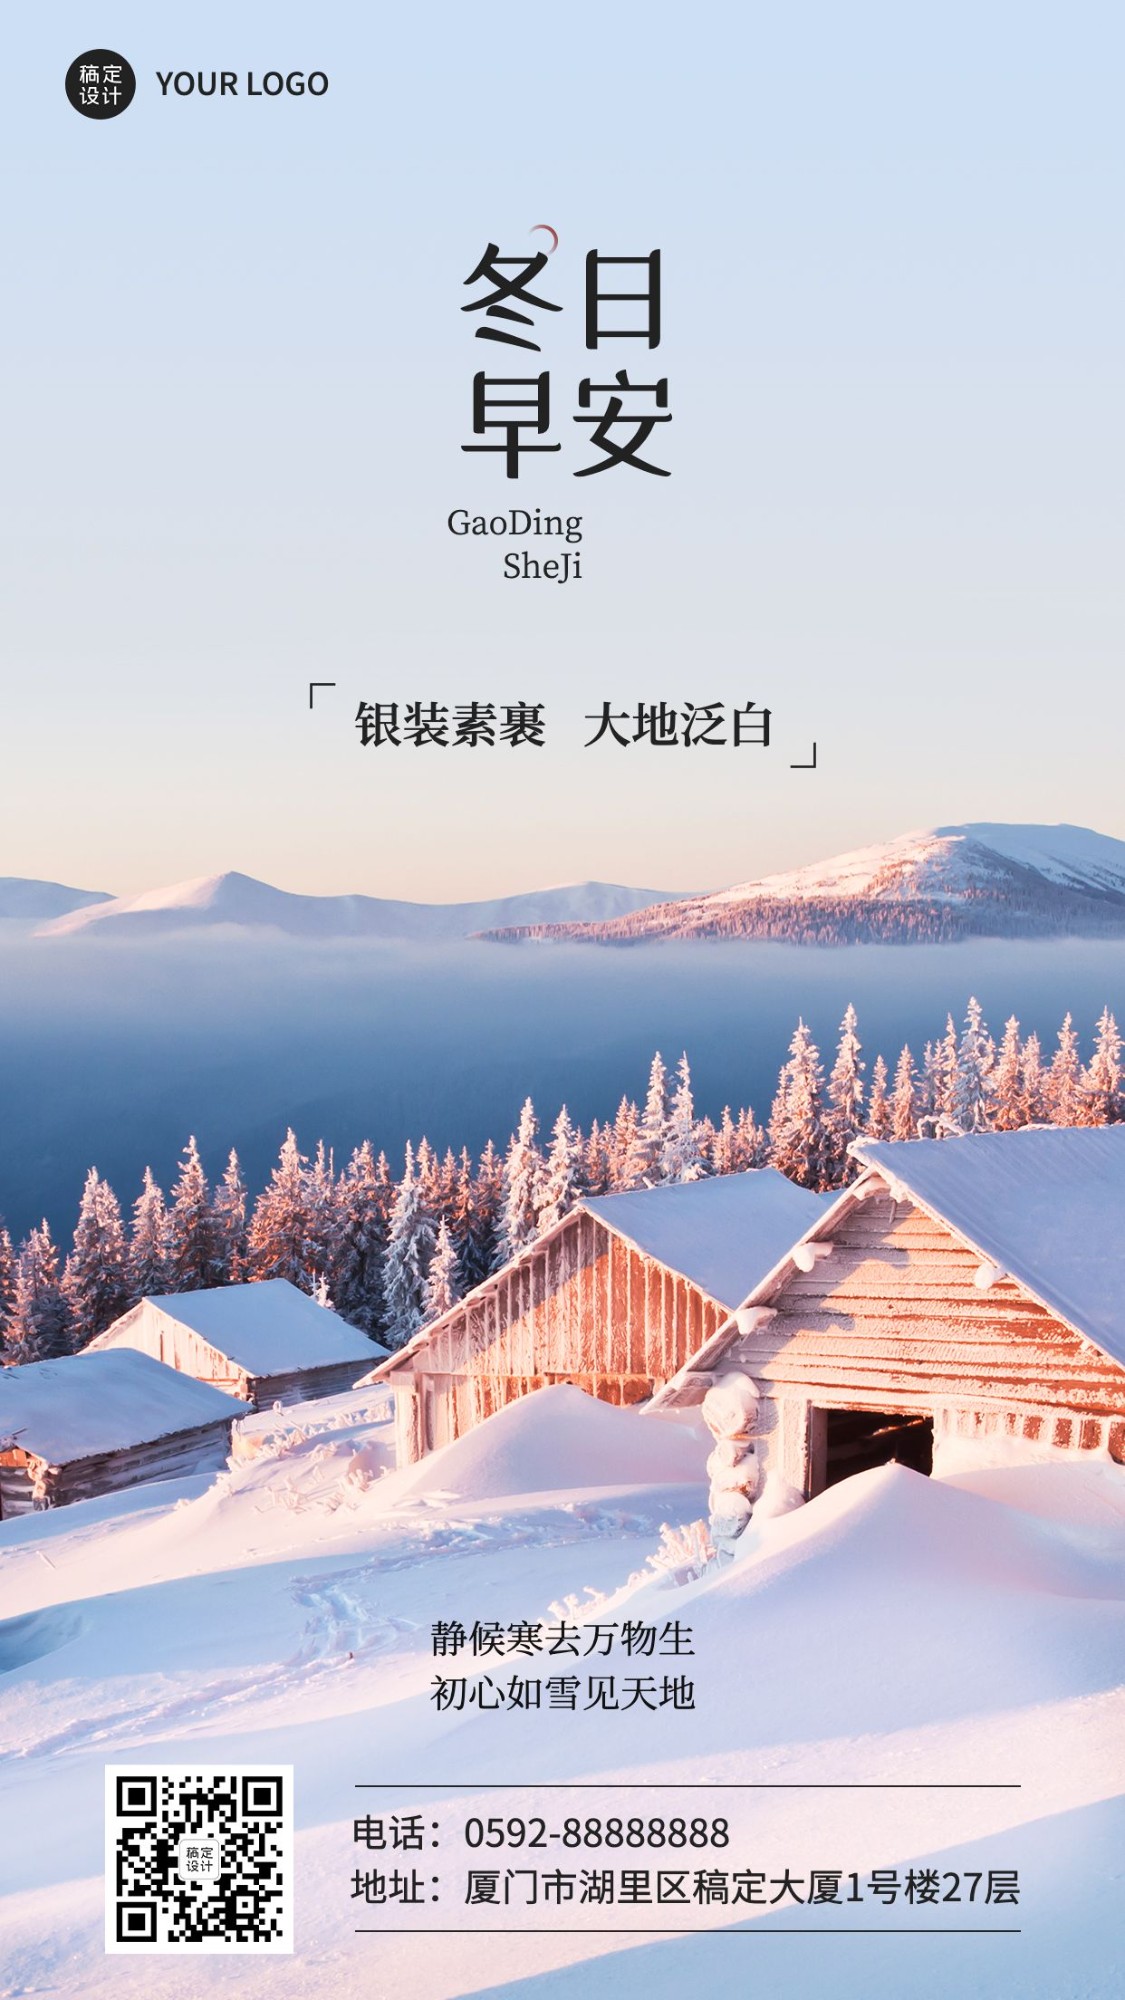 冬系列冬天季节祝福问候日签手机海报